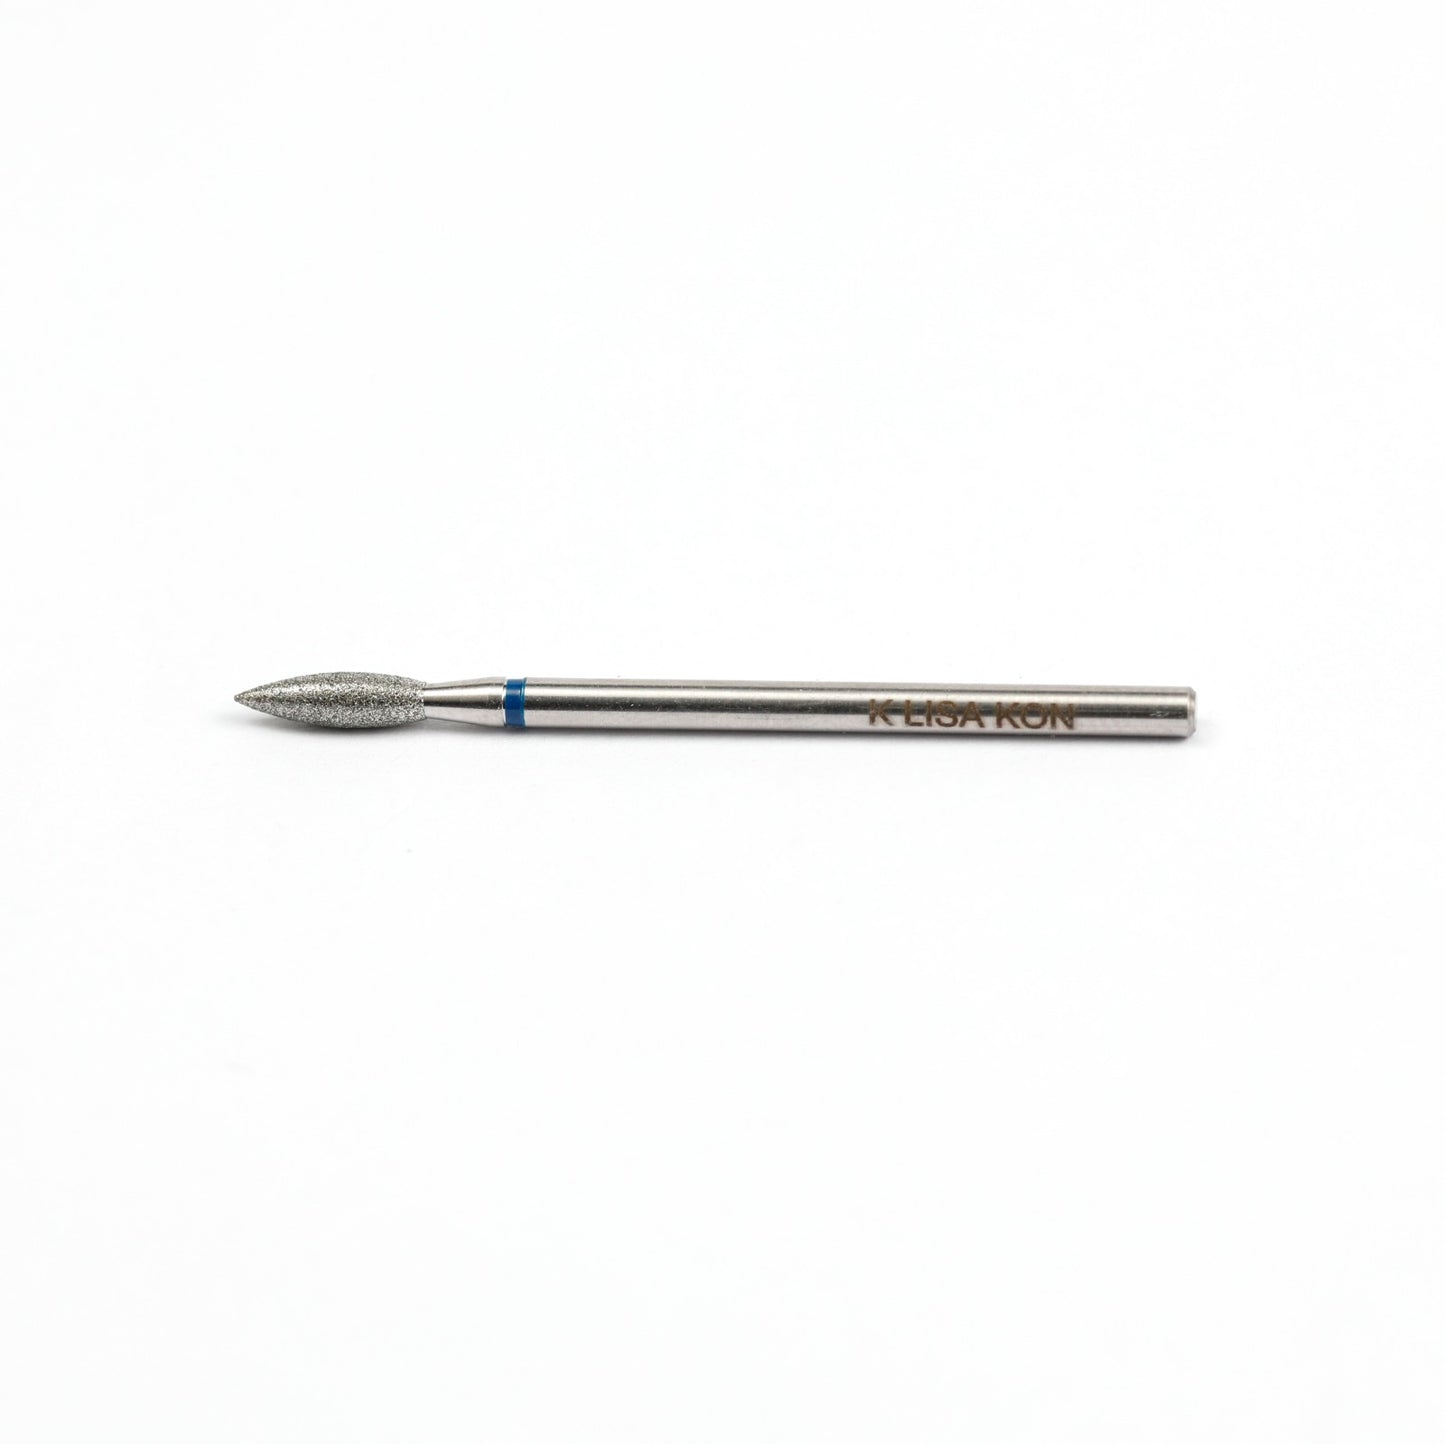 Lisakon - Сверло №8 Нержавеющая сталь Original Medium 1, диаметр 2,1 мм